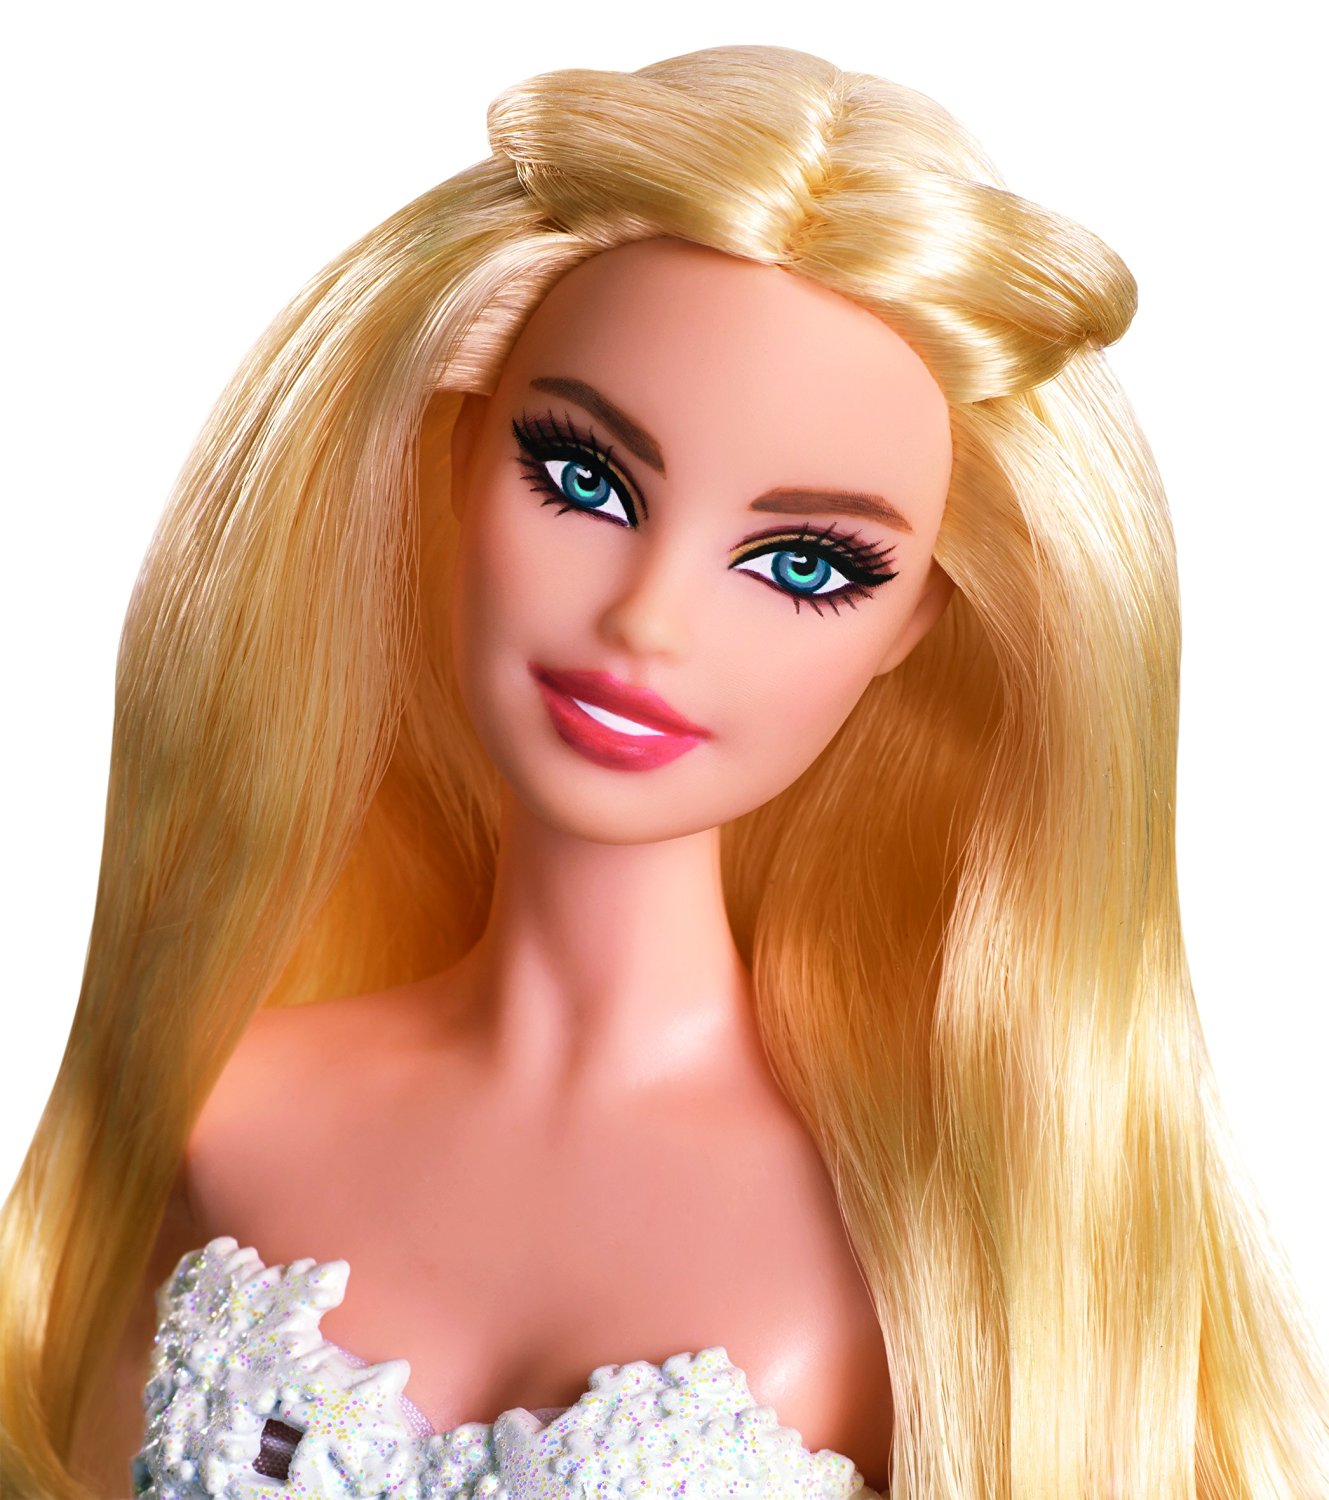 Кукла Barbie ® - Праздничная Barbie в зеленом платье  